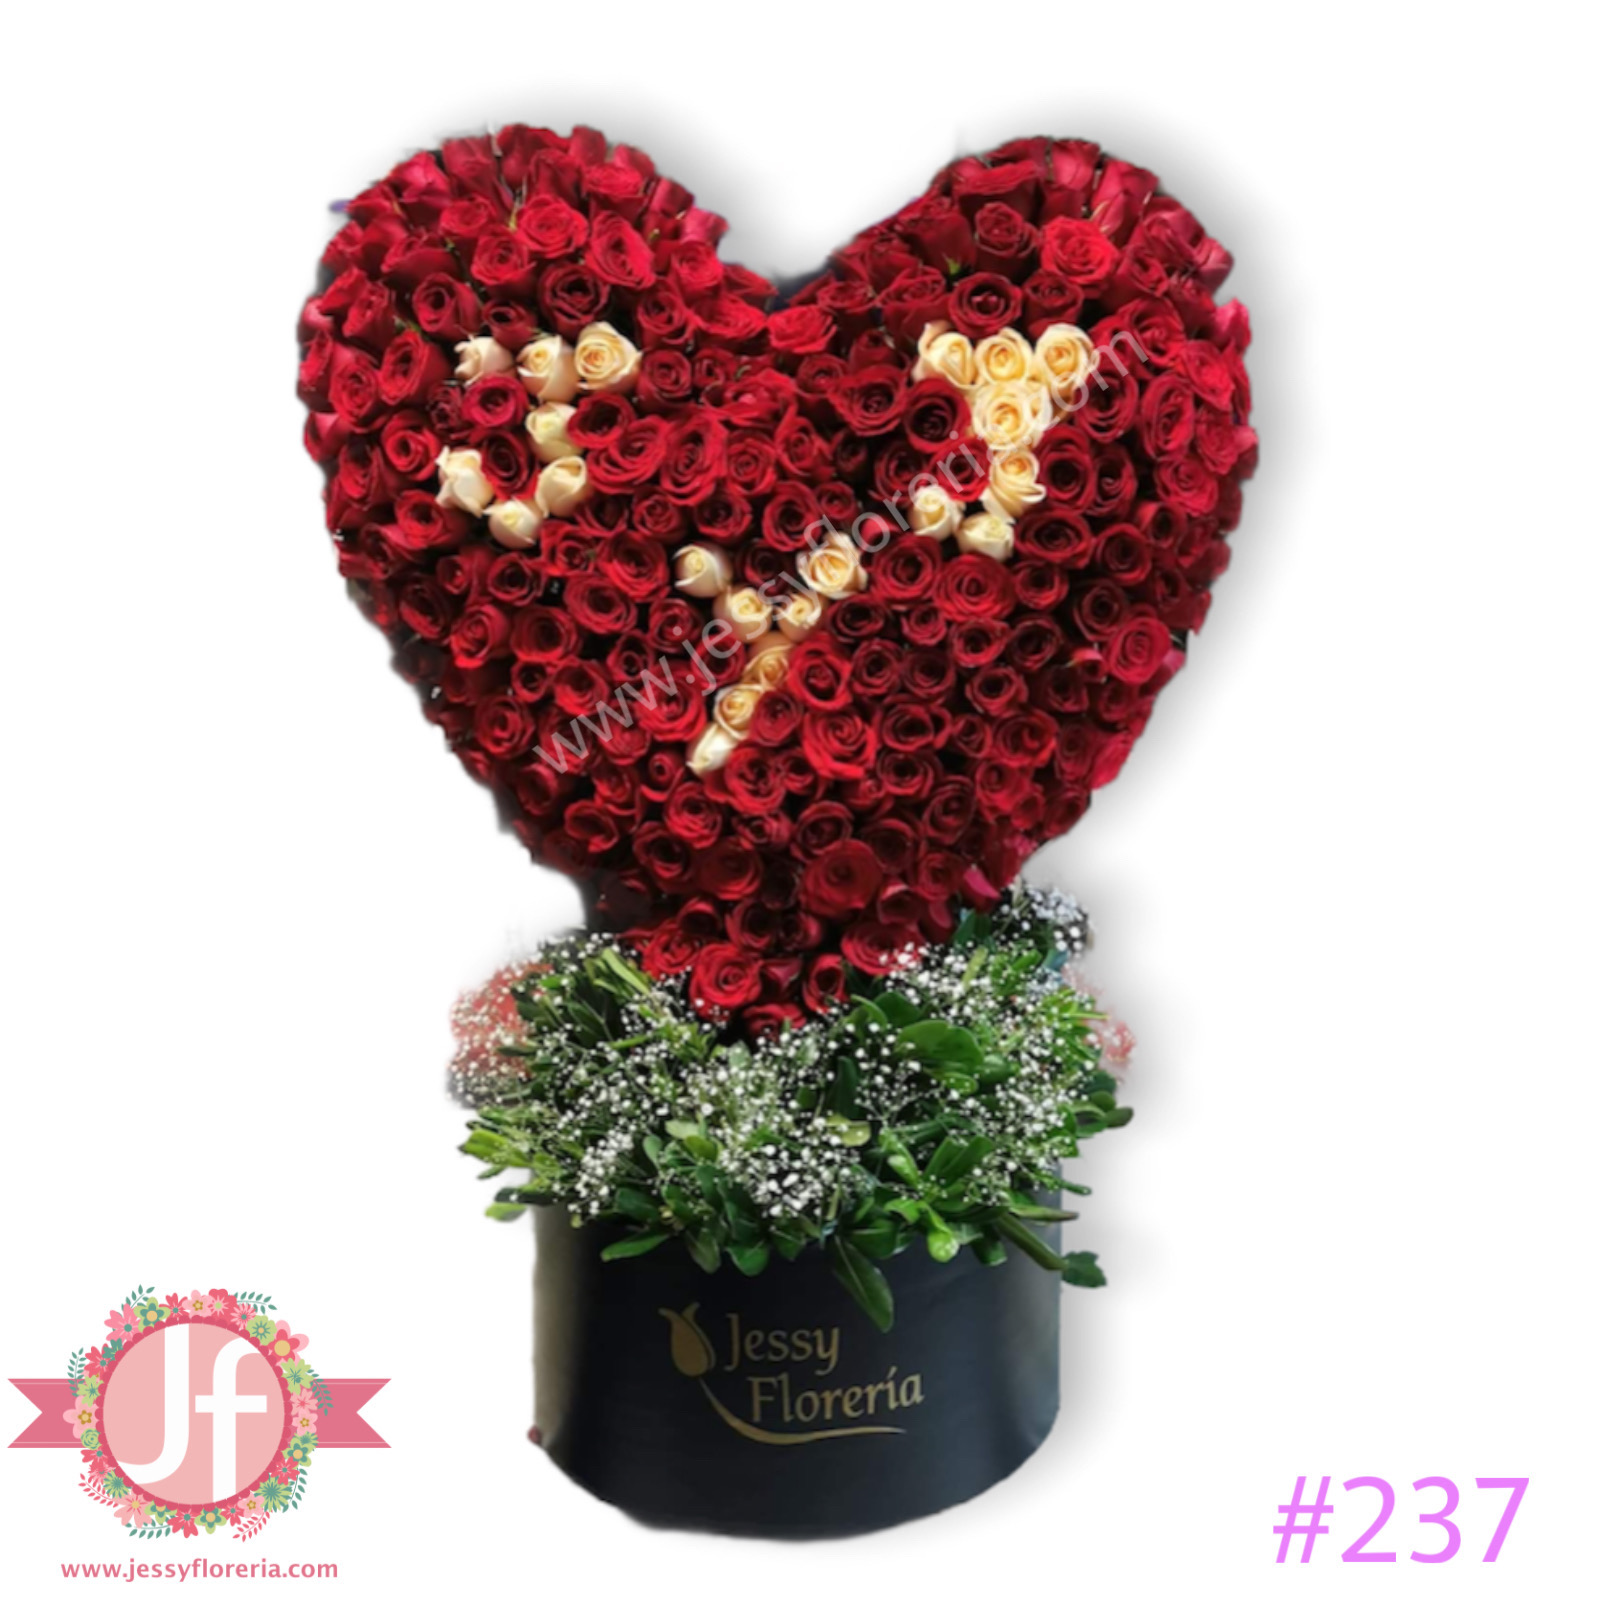 Caja Corazón Mediana - Floristería Flores Son Amor